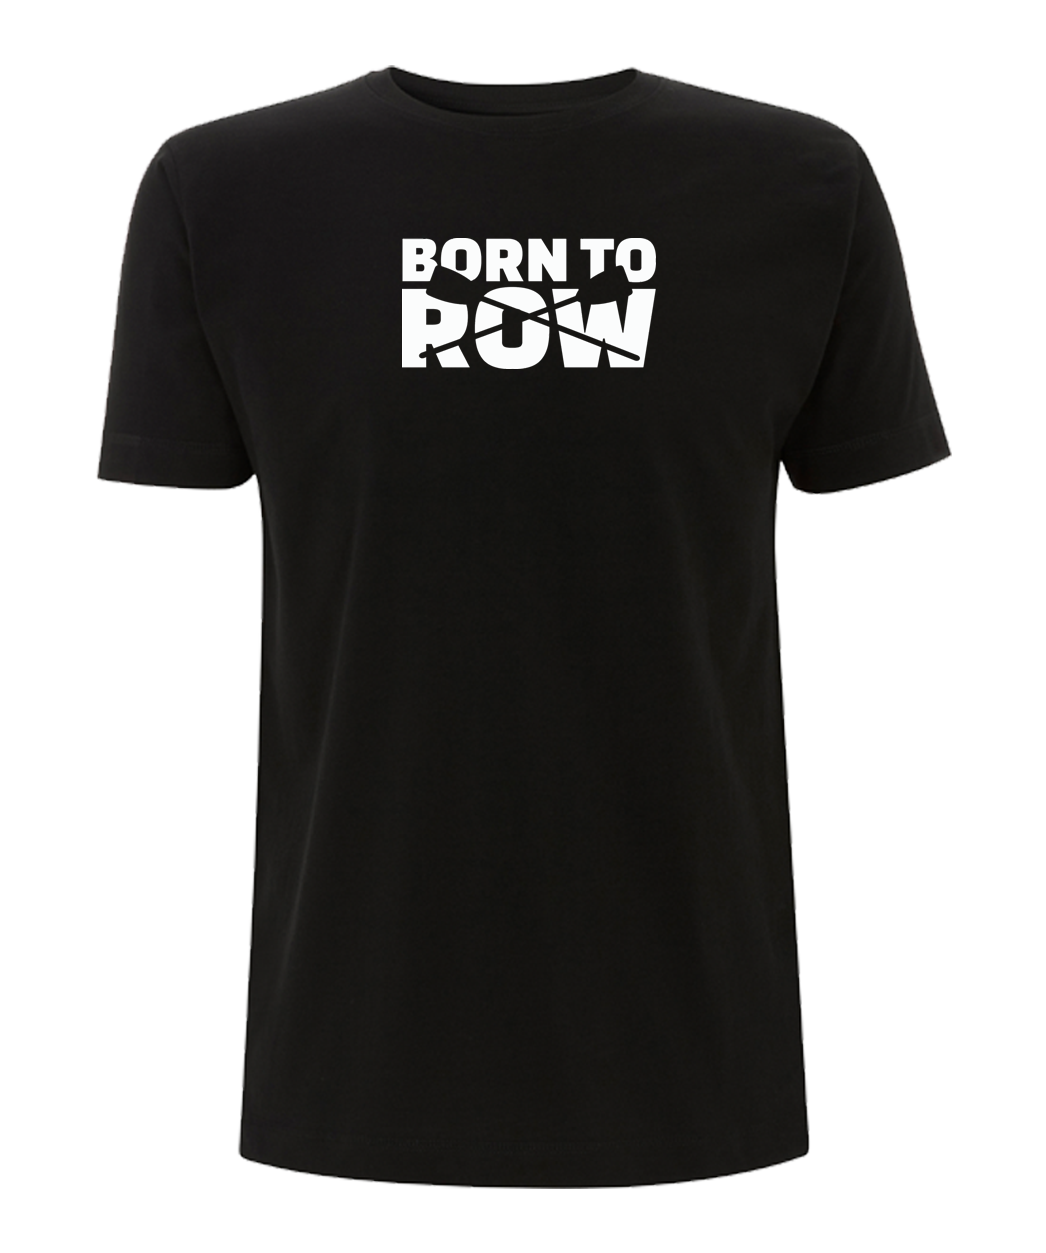 Born to Row T-Shirt